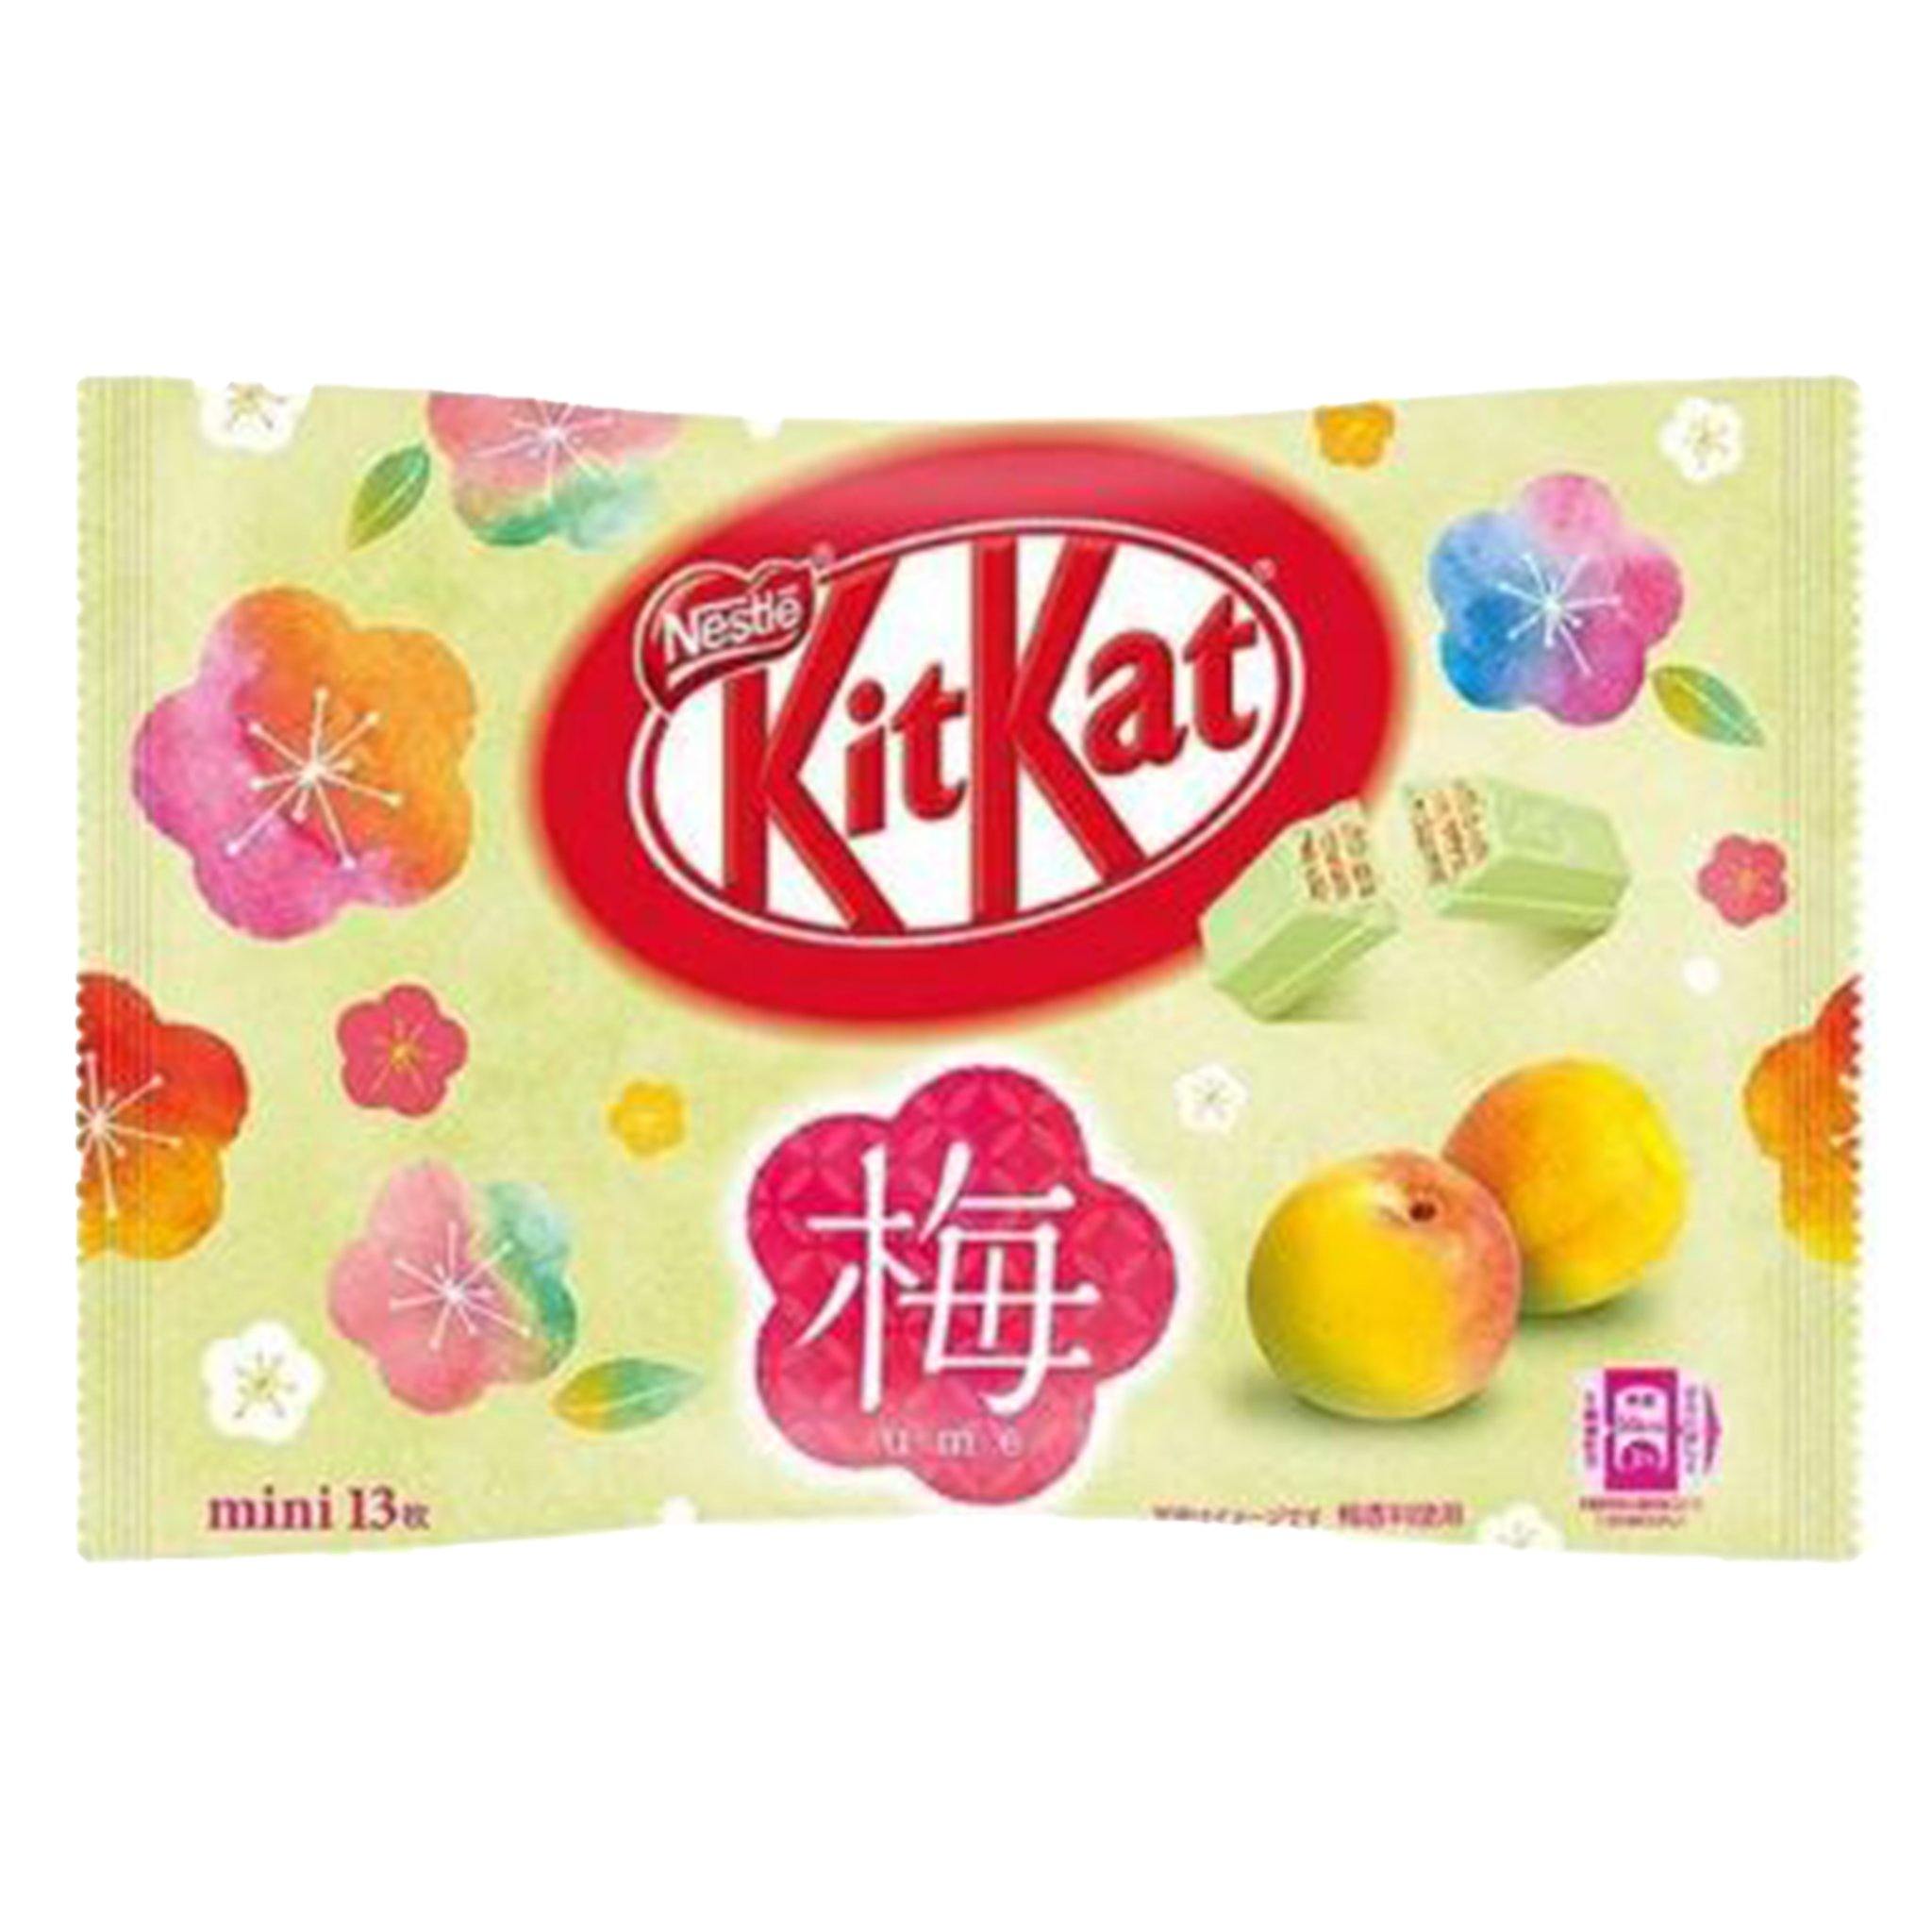 Kit Kat Passion Fruit - Japan - Sweet Exotics